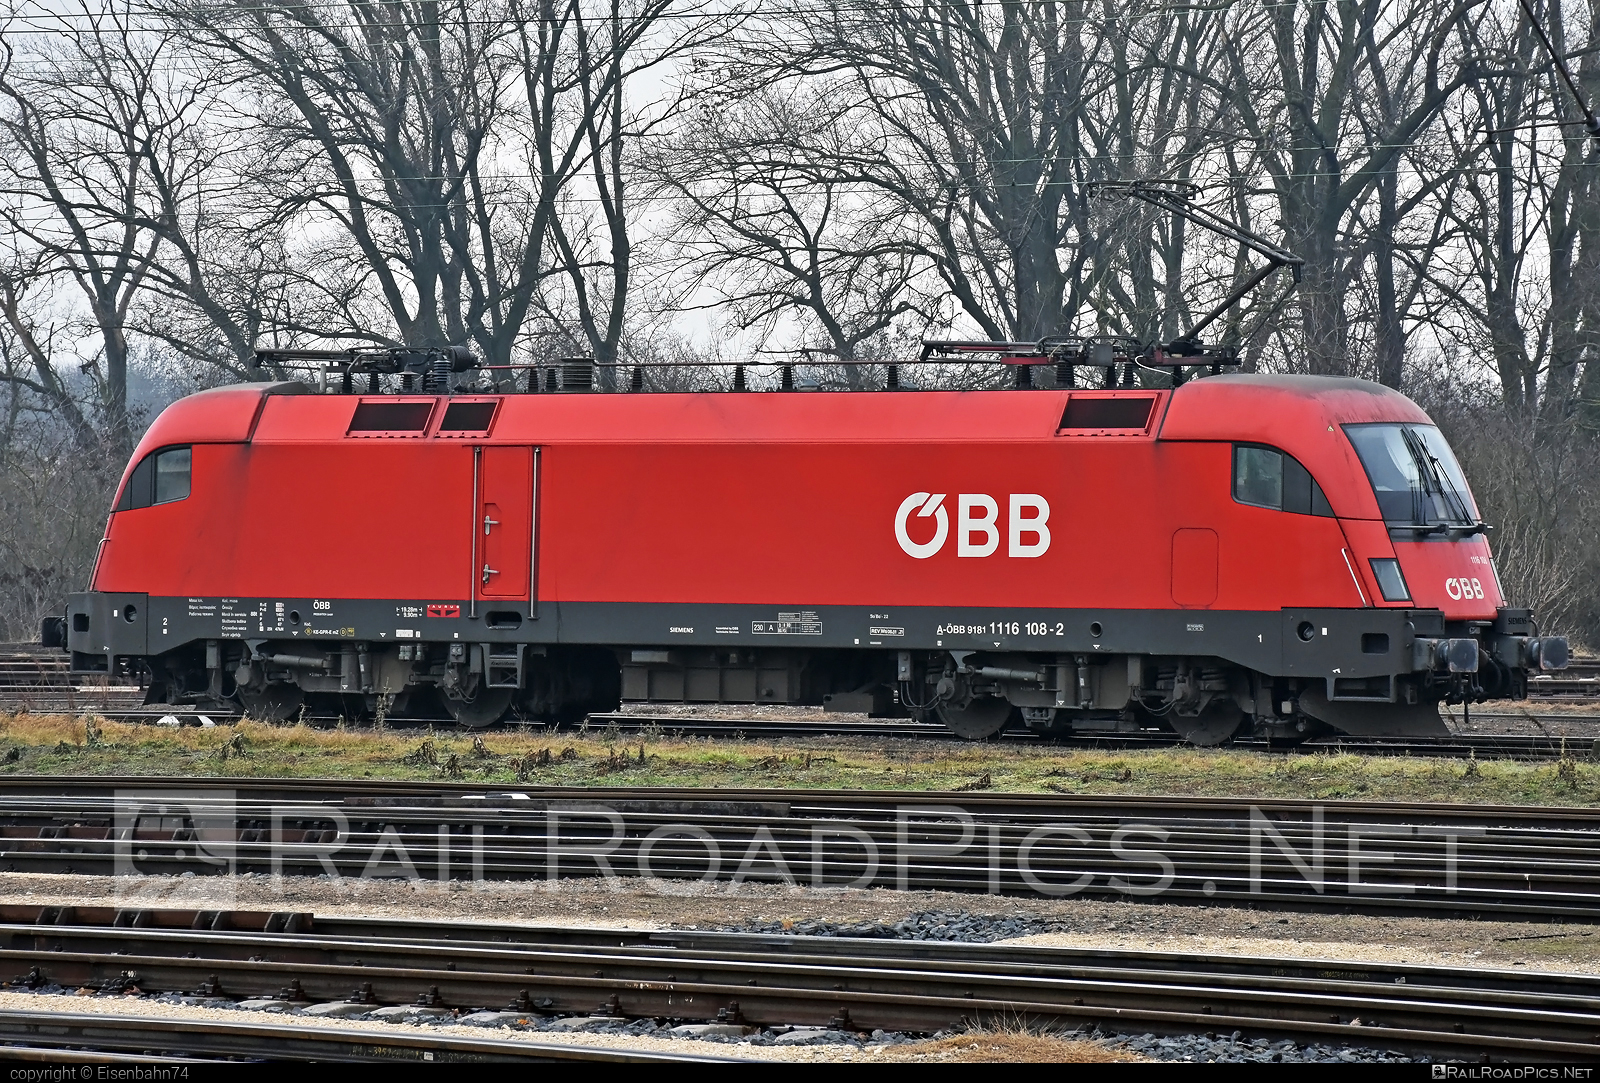 Siemens ES 64 U2 - 1116 108 operated by Rail Cargo Austria AG #es64 #es64u2 #eurosprinter #obb #osterreichischebundesbahnen #rcw #siemens #siemenses64 #siemenses64u2 #siemenstaurus #taurus #tauruslocomotive